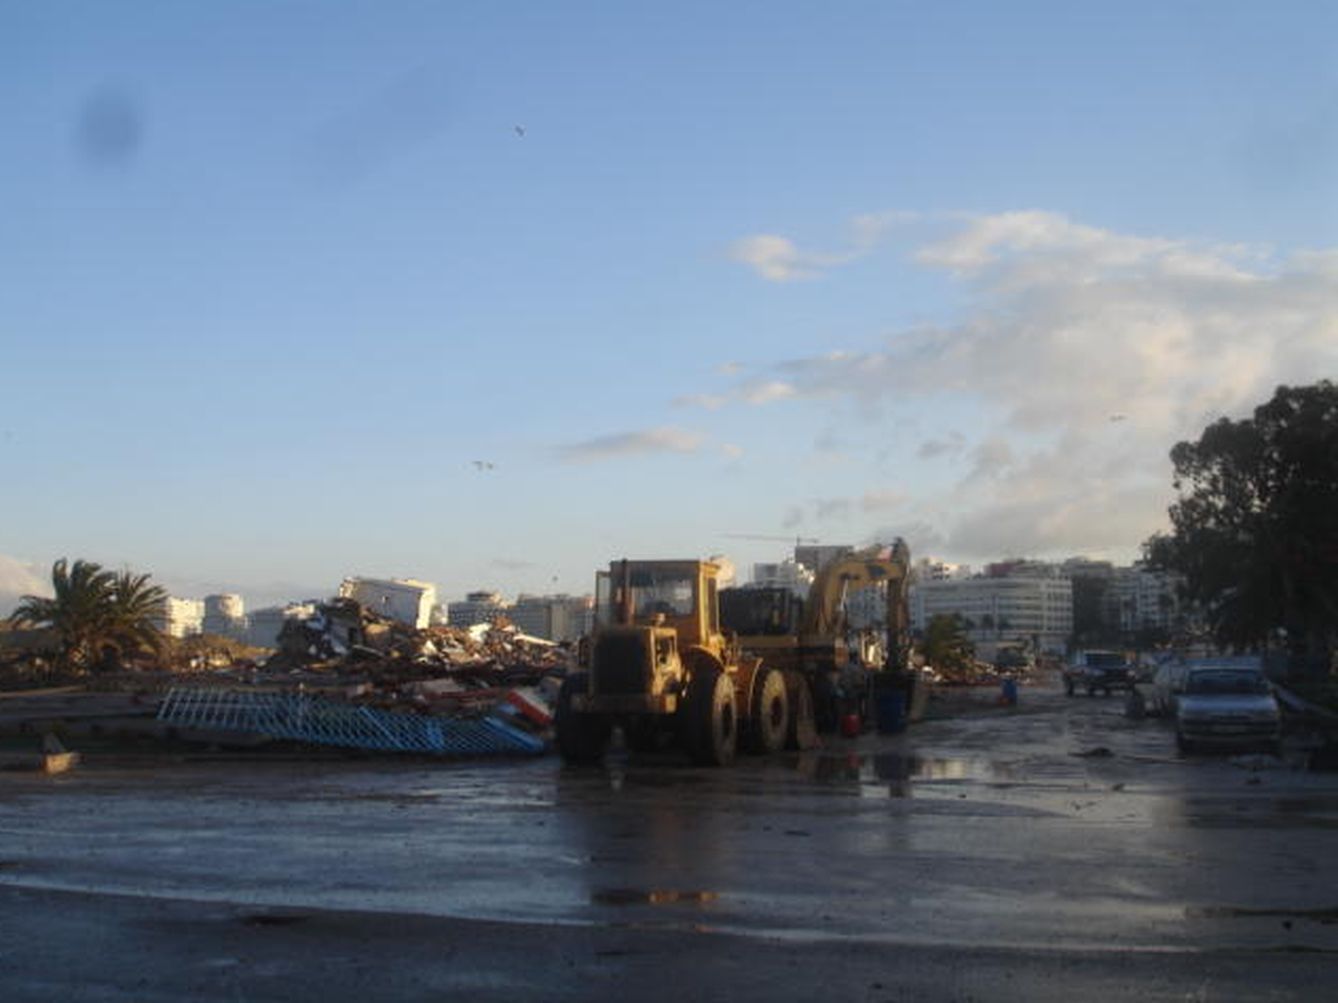 Los trabajos de demolición en la zona franca del puerto de Tánger (Foto: S. Moreno).